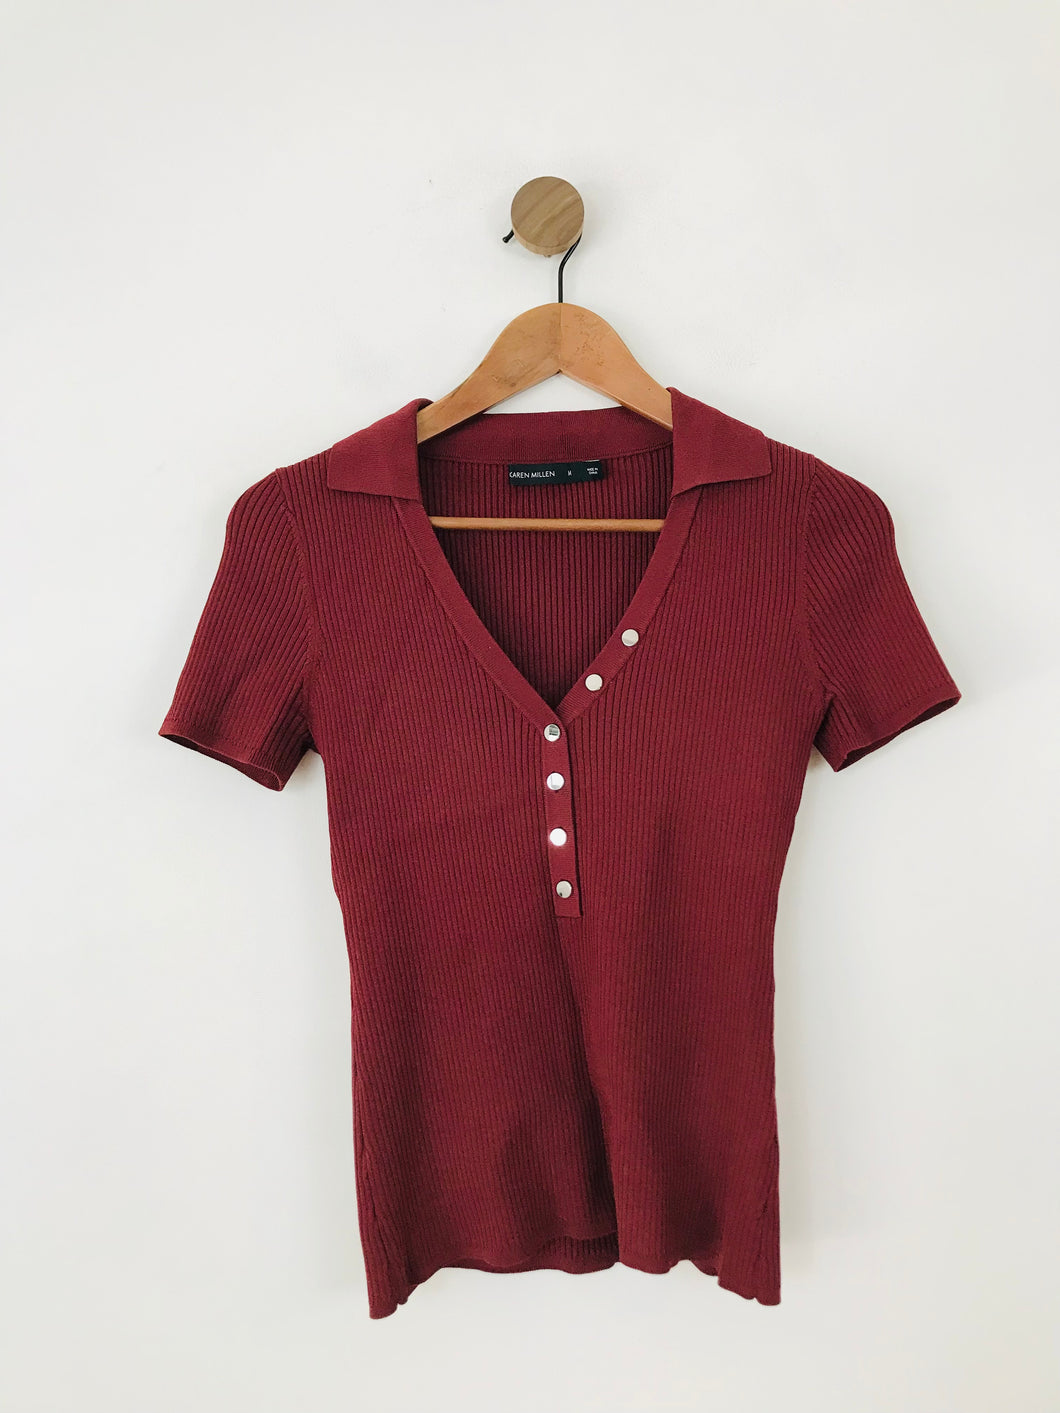 Karen Millen Women's Knit Henley T-Shirt | M UK10-12 | Red